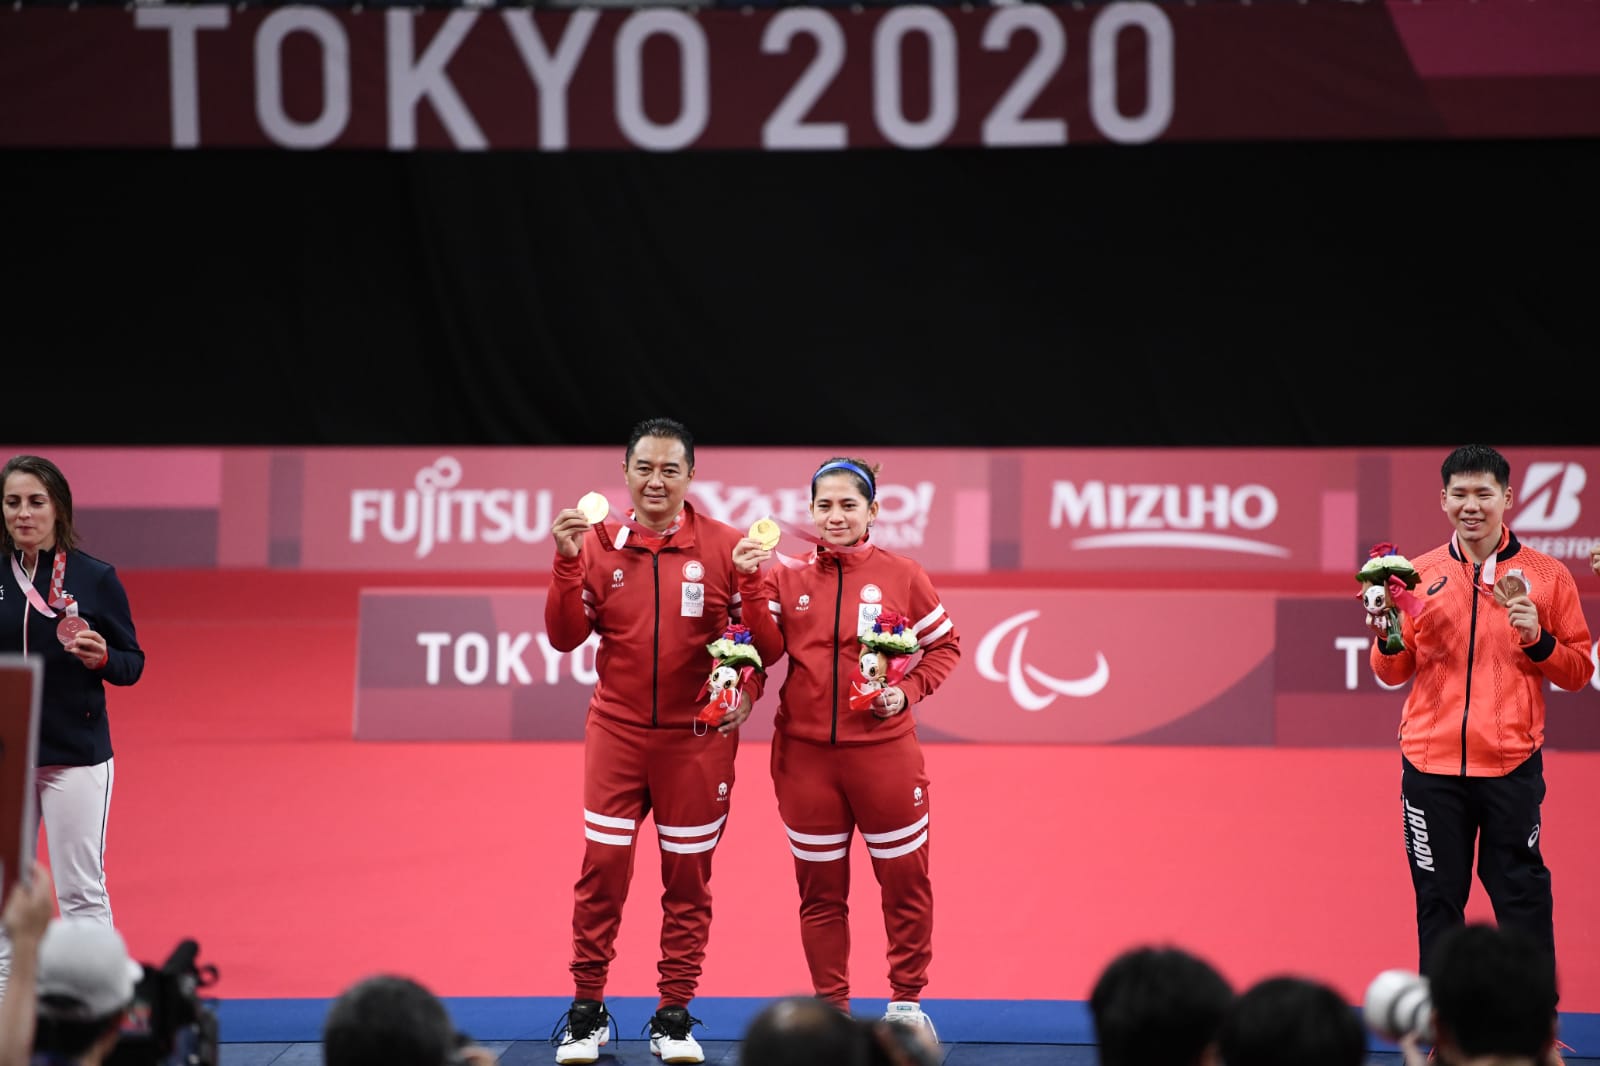 Dikecewakan, Juara Paralimpiade Tokyo Asal Majalengka Ternyata Ketua NPCI Tasikmalaya